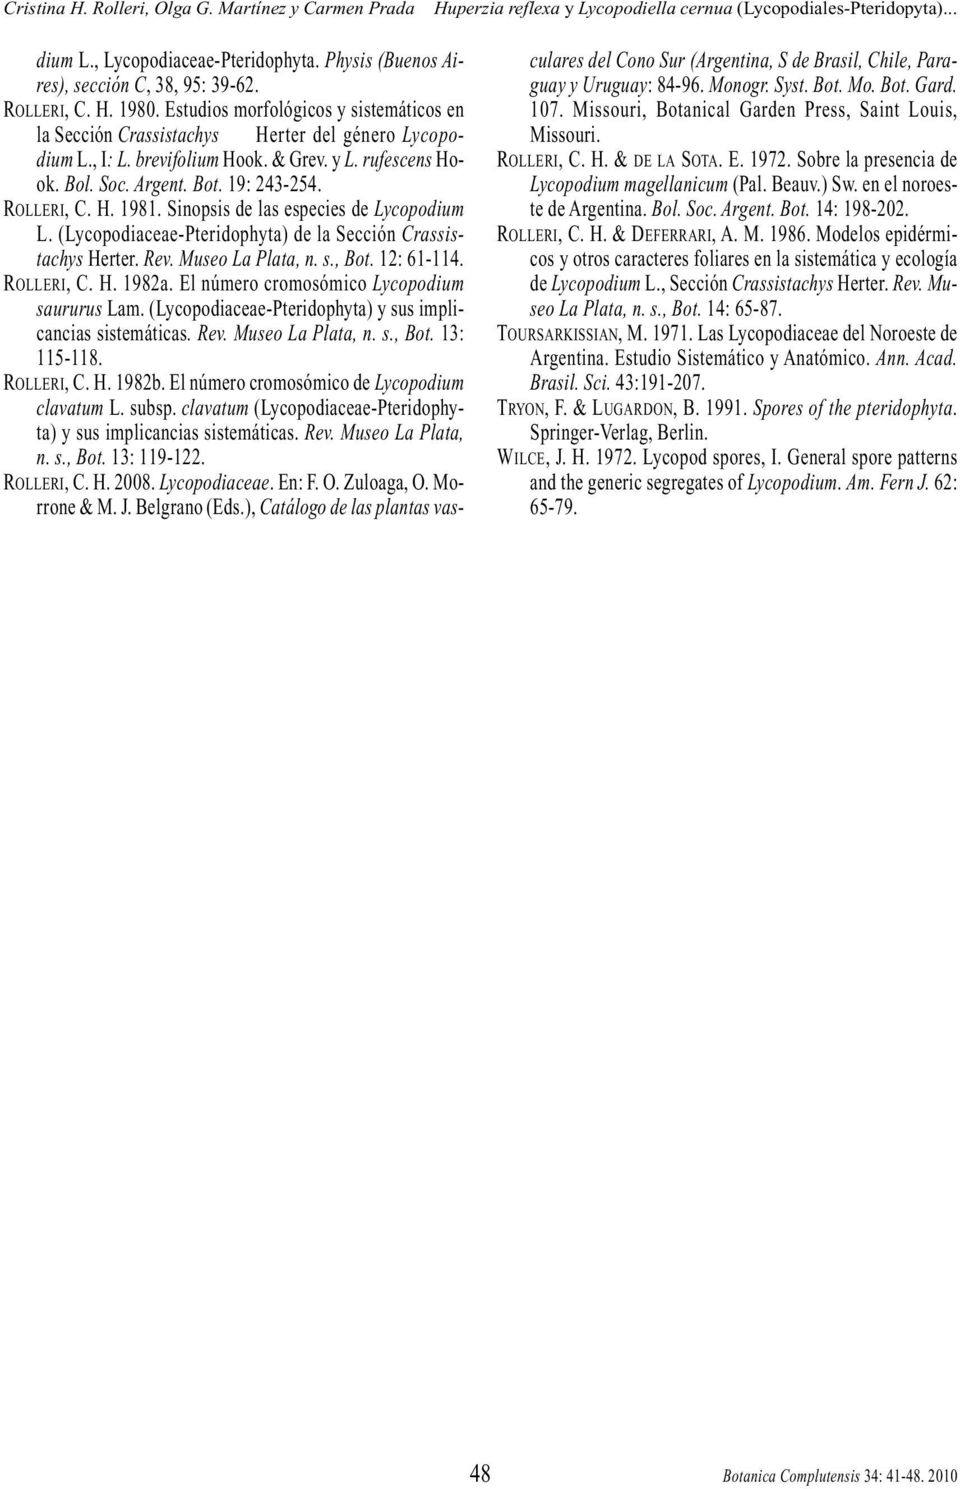 H. 1981. Sinopsis de las especies de Lycopodium L. (Lycopodiaceae-Pteridophyta) de la Sección Crassistachys Herter. Rev. Museo La Plata, n. s., Bot. 12: 61-114. ROLLERI, C. H. 1982a.